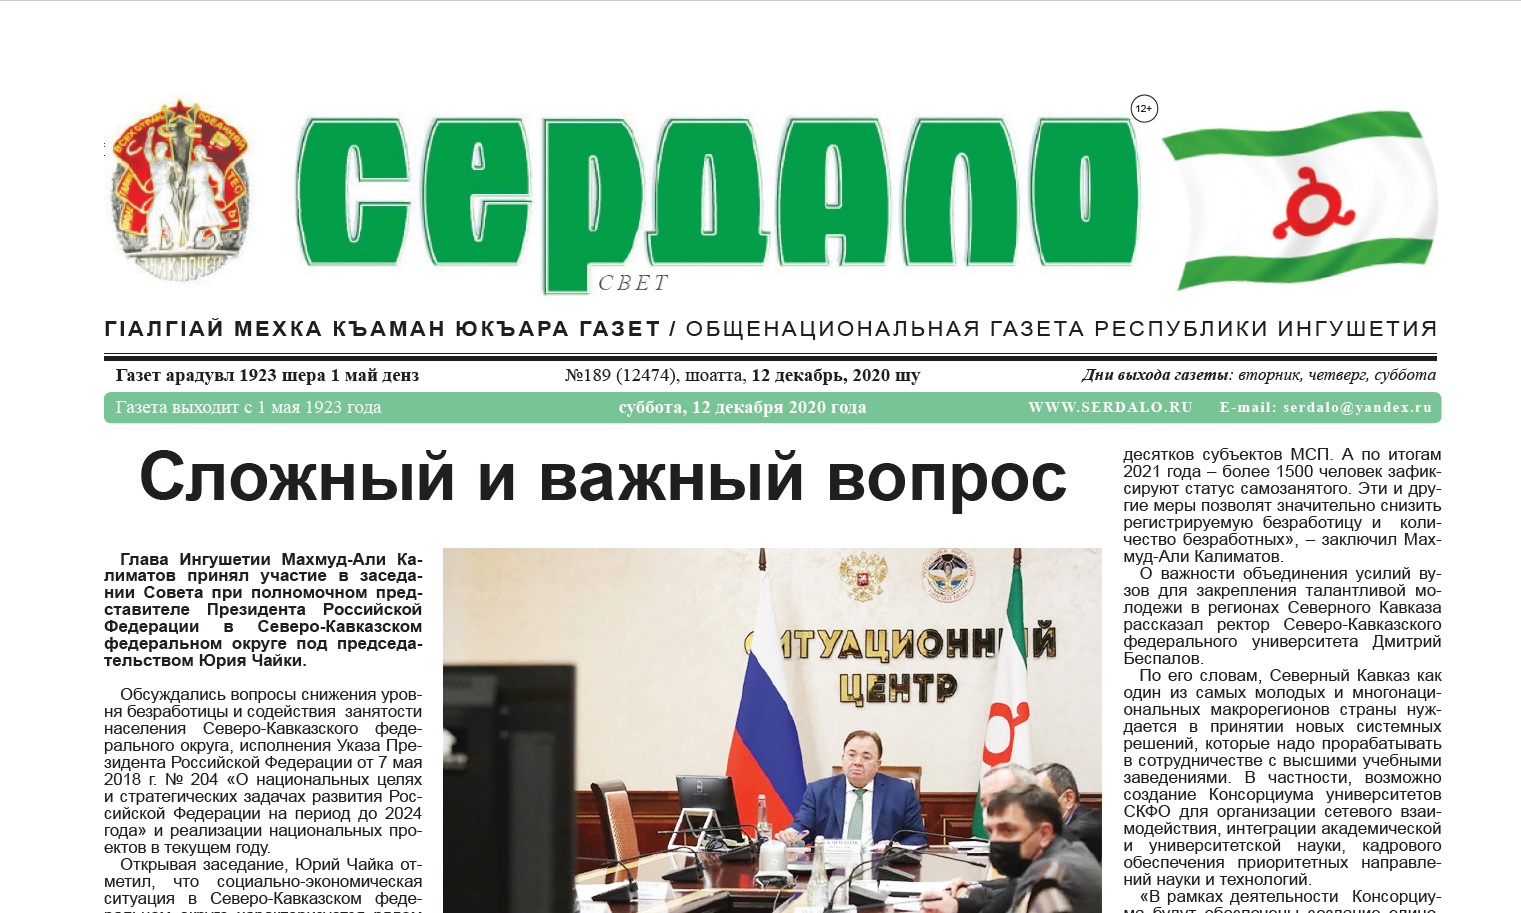 Первая страница газеты Республики Ингушетия со статьей об Уроке мужества в ст. Юго-Северная